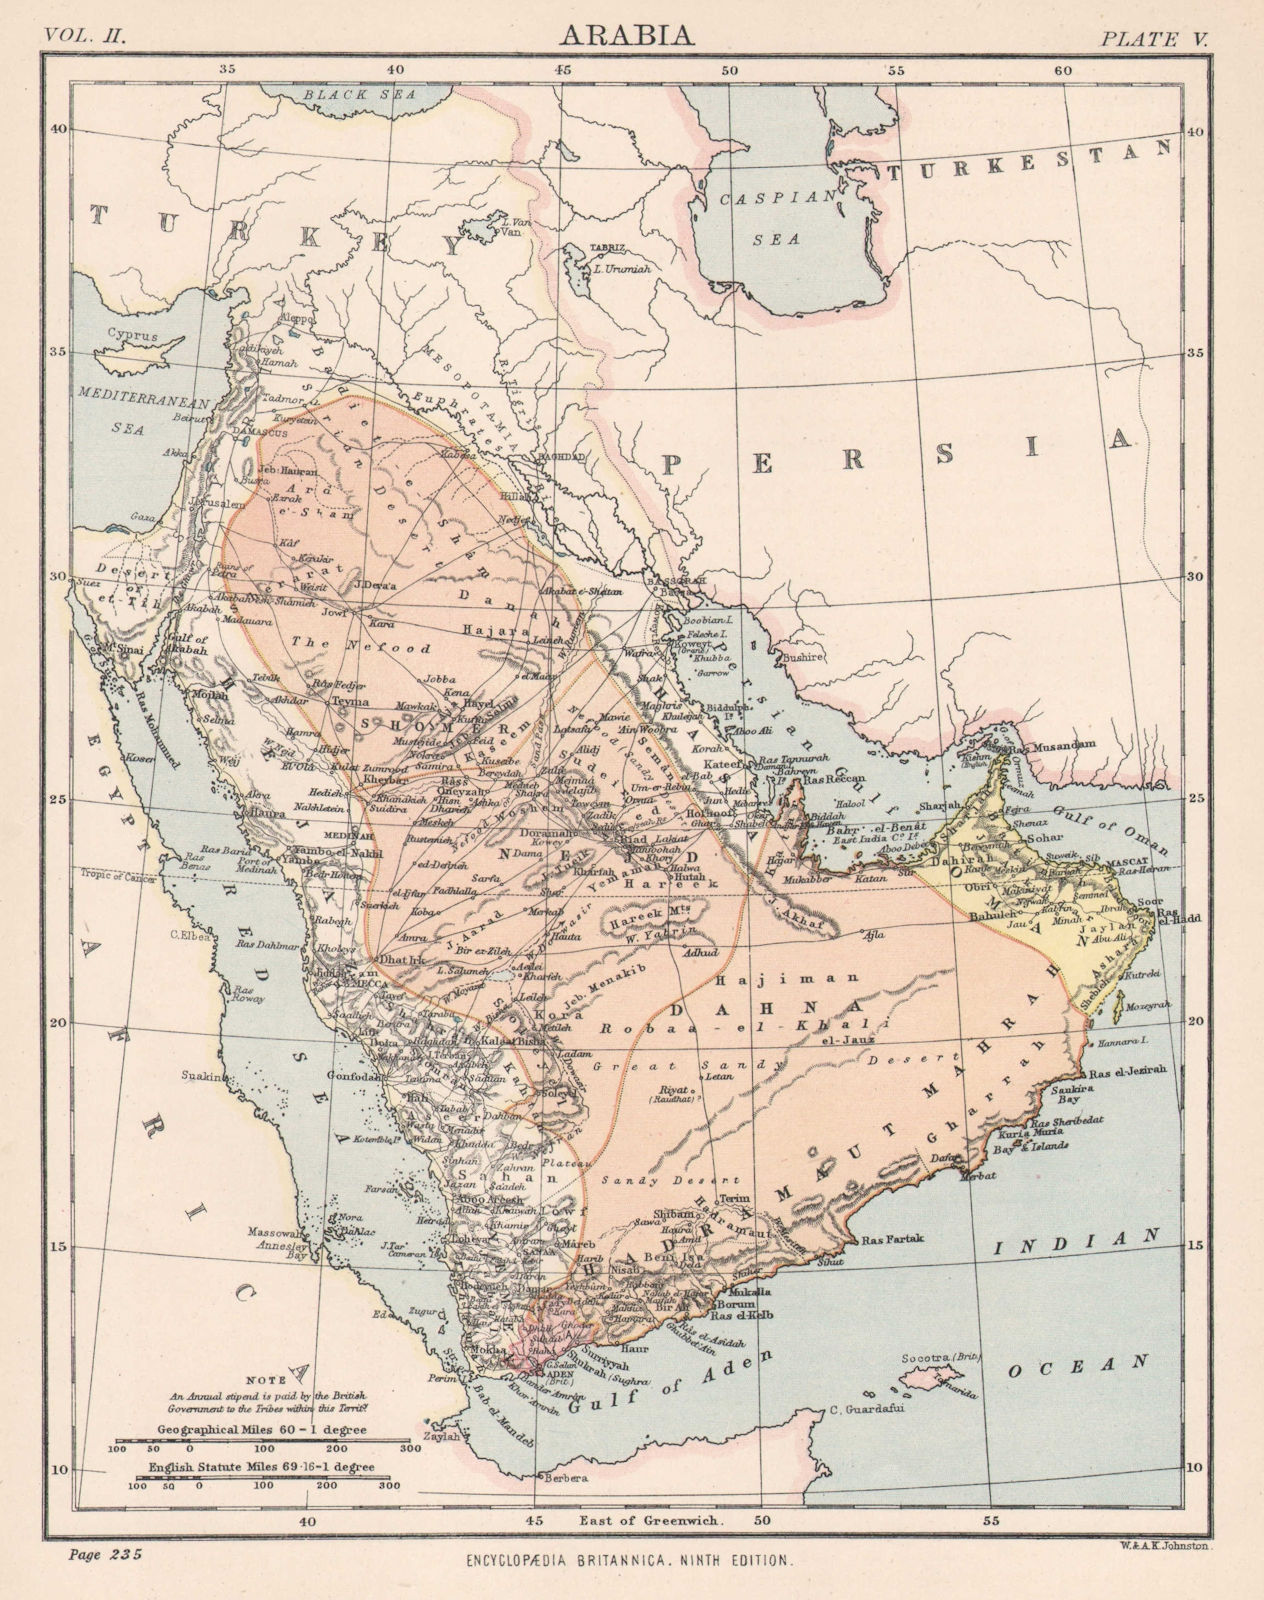 ARABIA. Saudi Arabia Oman Aden Yemen UAE Mecca Medina 1898 old antique map